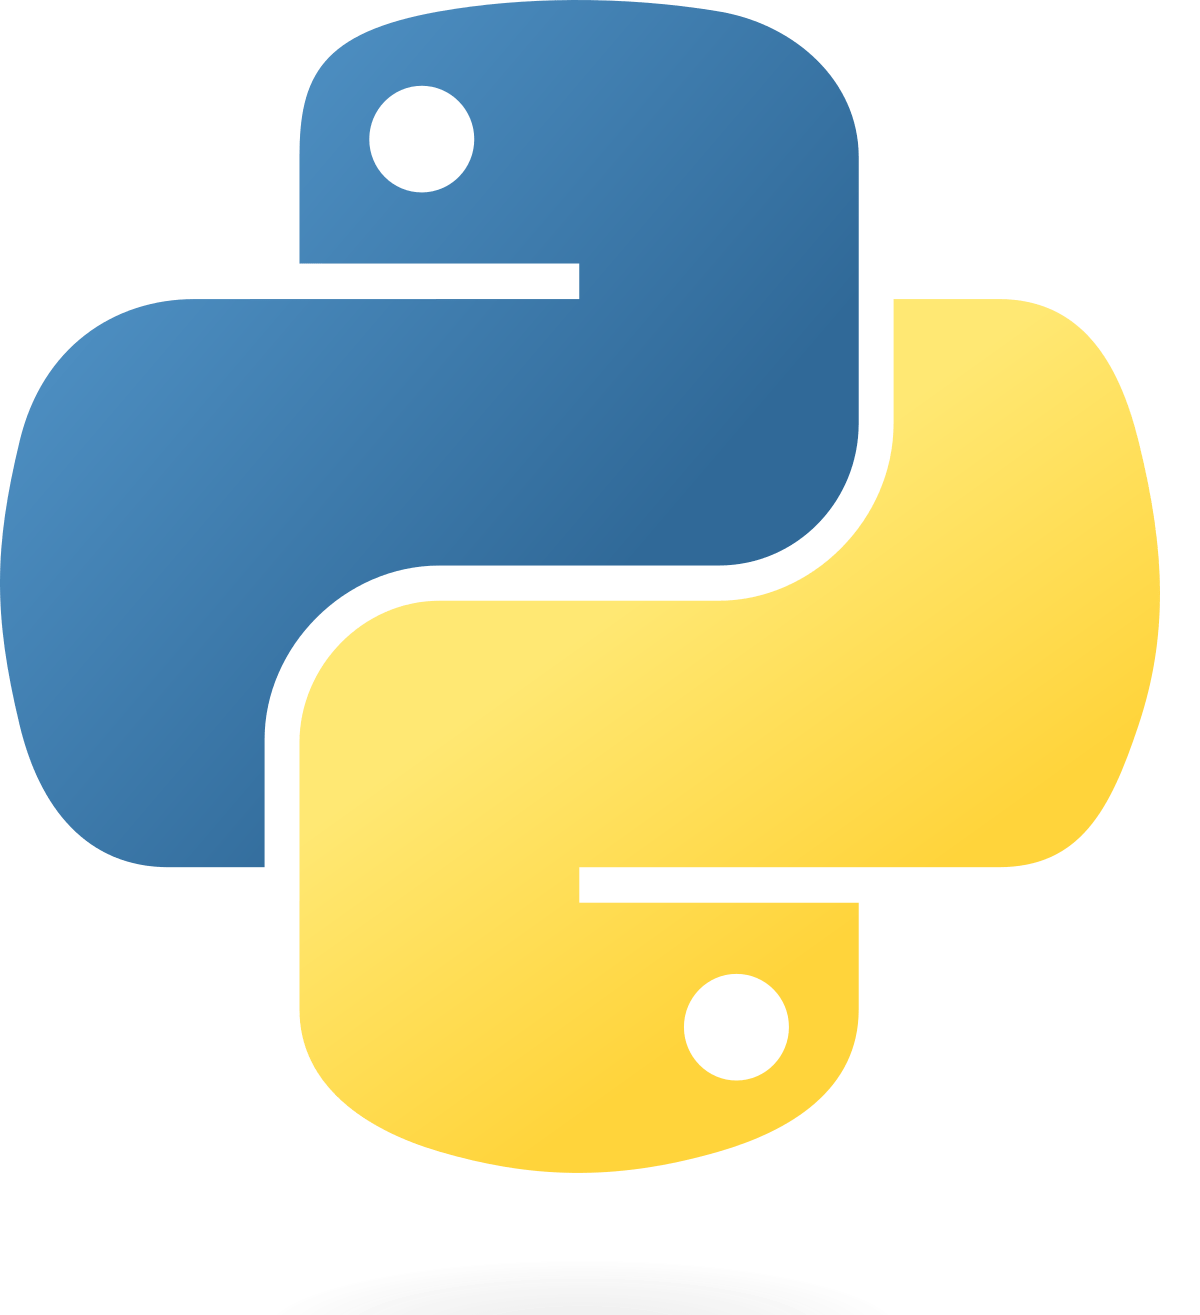 Curso Python Fundamentos